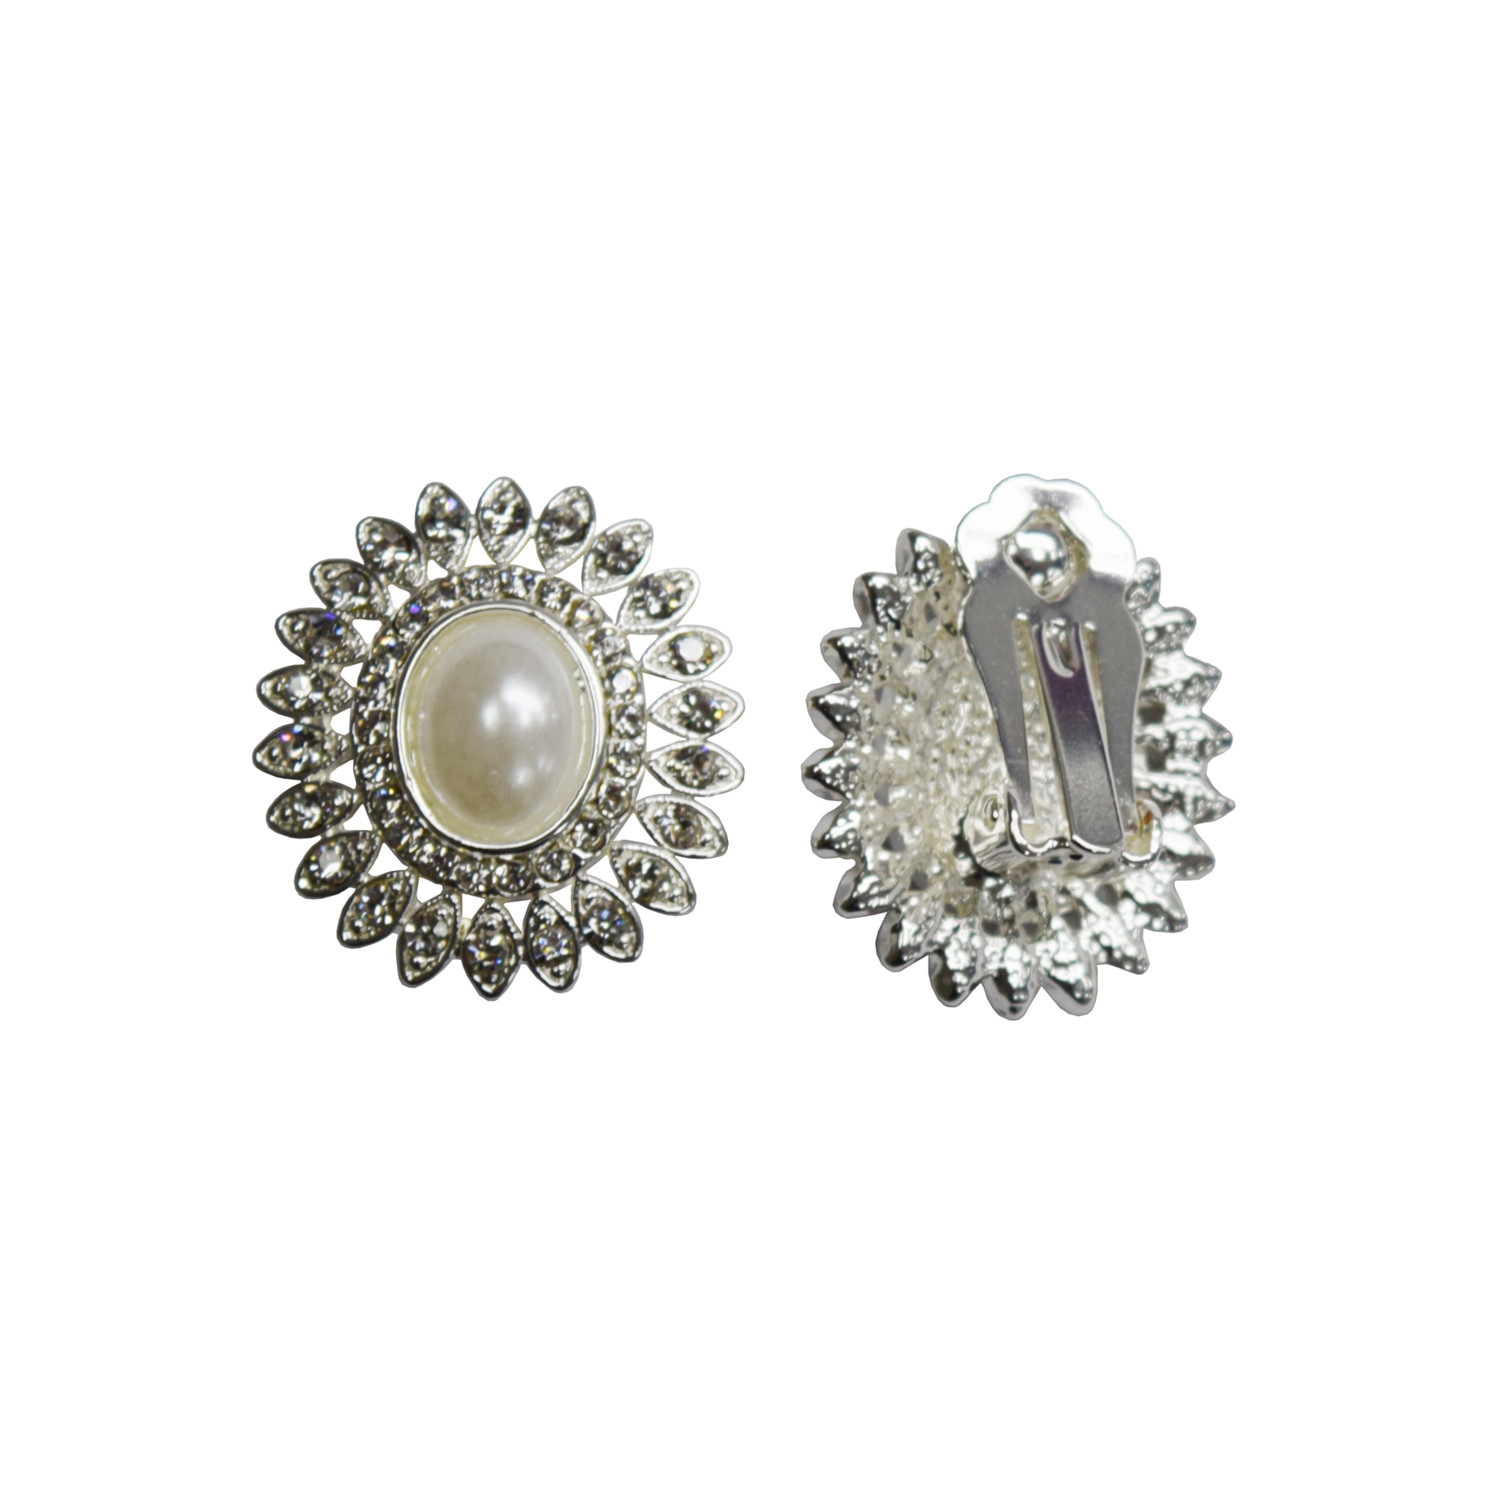 Clip On Earrings Walmart
 coolcrystal Womens Fashion Jewelry Wedding Earring